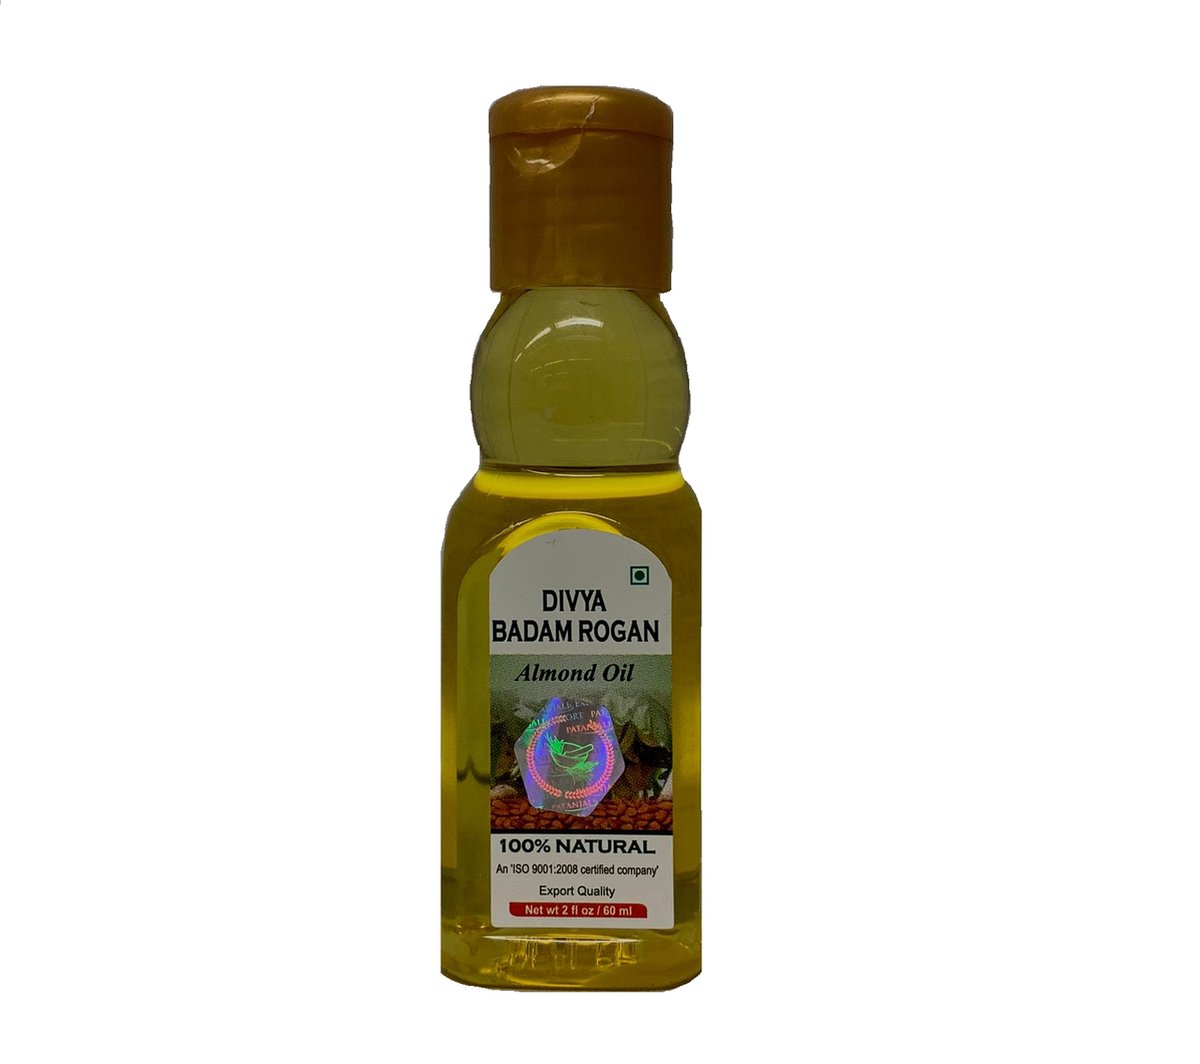 Amandelolie - Vitamine E - 60 ml - Divya Amandelolie - 100% Puur & Natuurlijk - Onbewerkte Amandelolie - Voor Haar, Huid & Lichaam - 60 ML